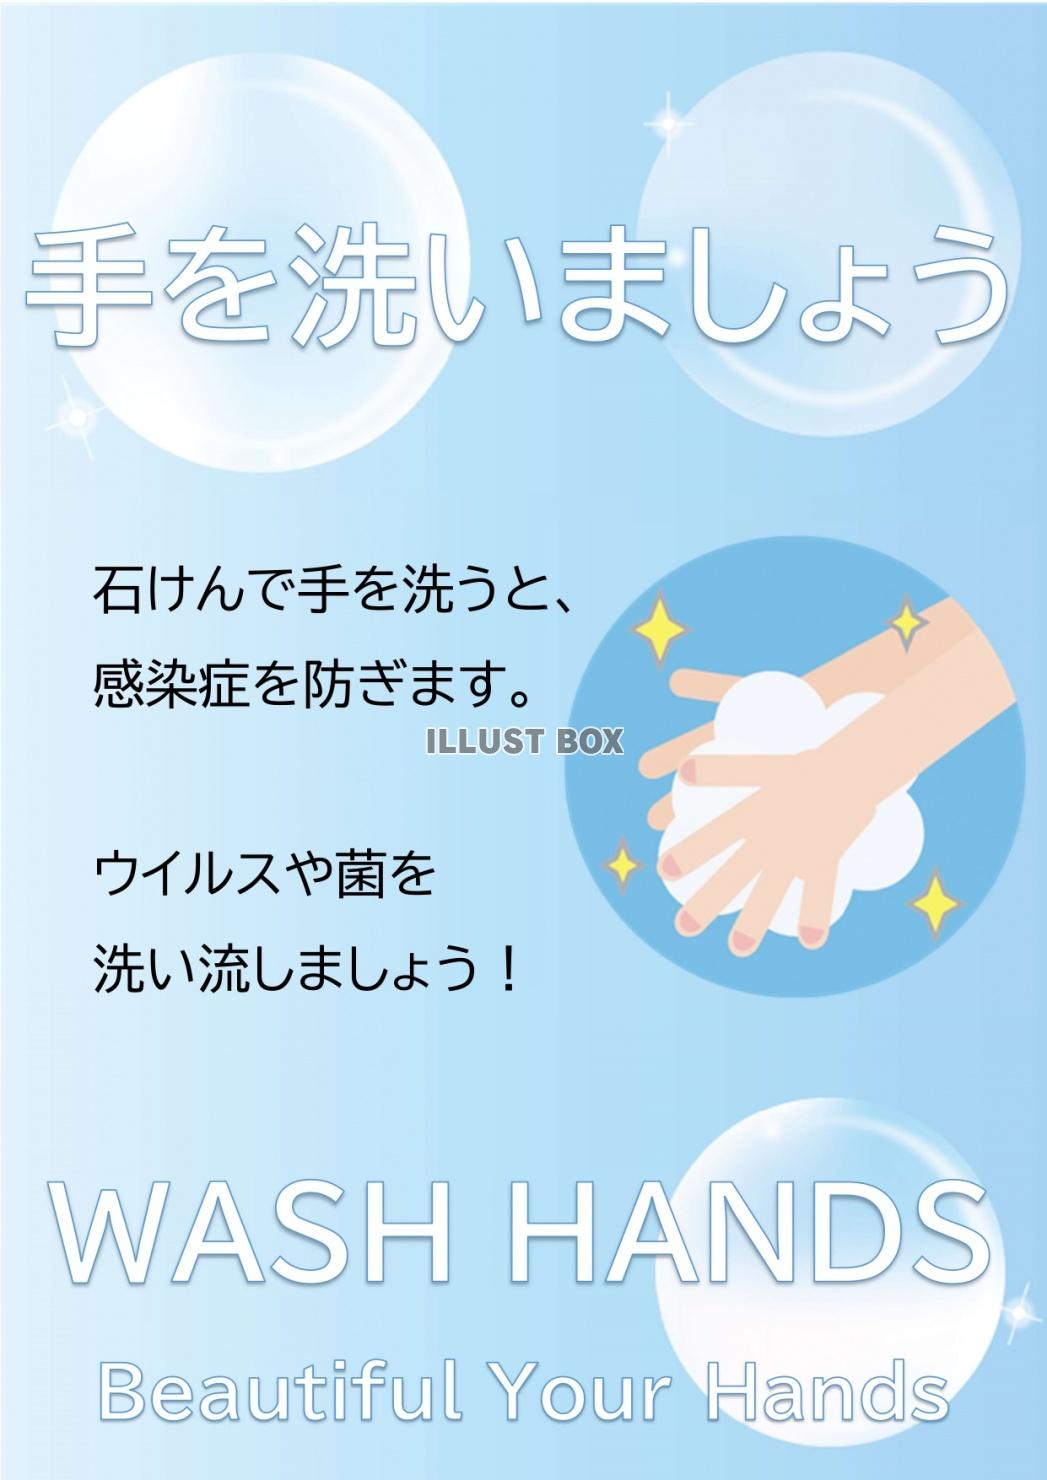 無料イラスト かわいい手洗い啓発イラスト ポスターのテンプレートをダウンロ